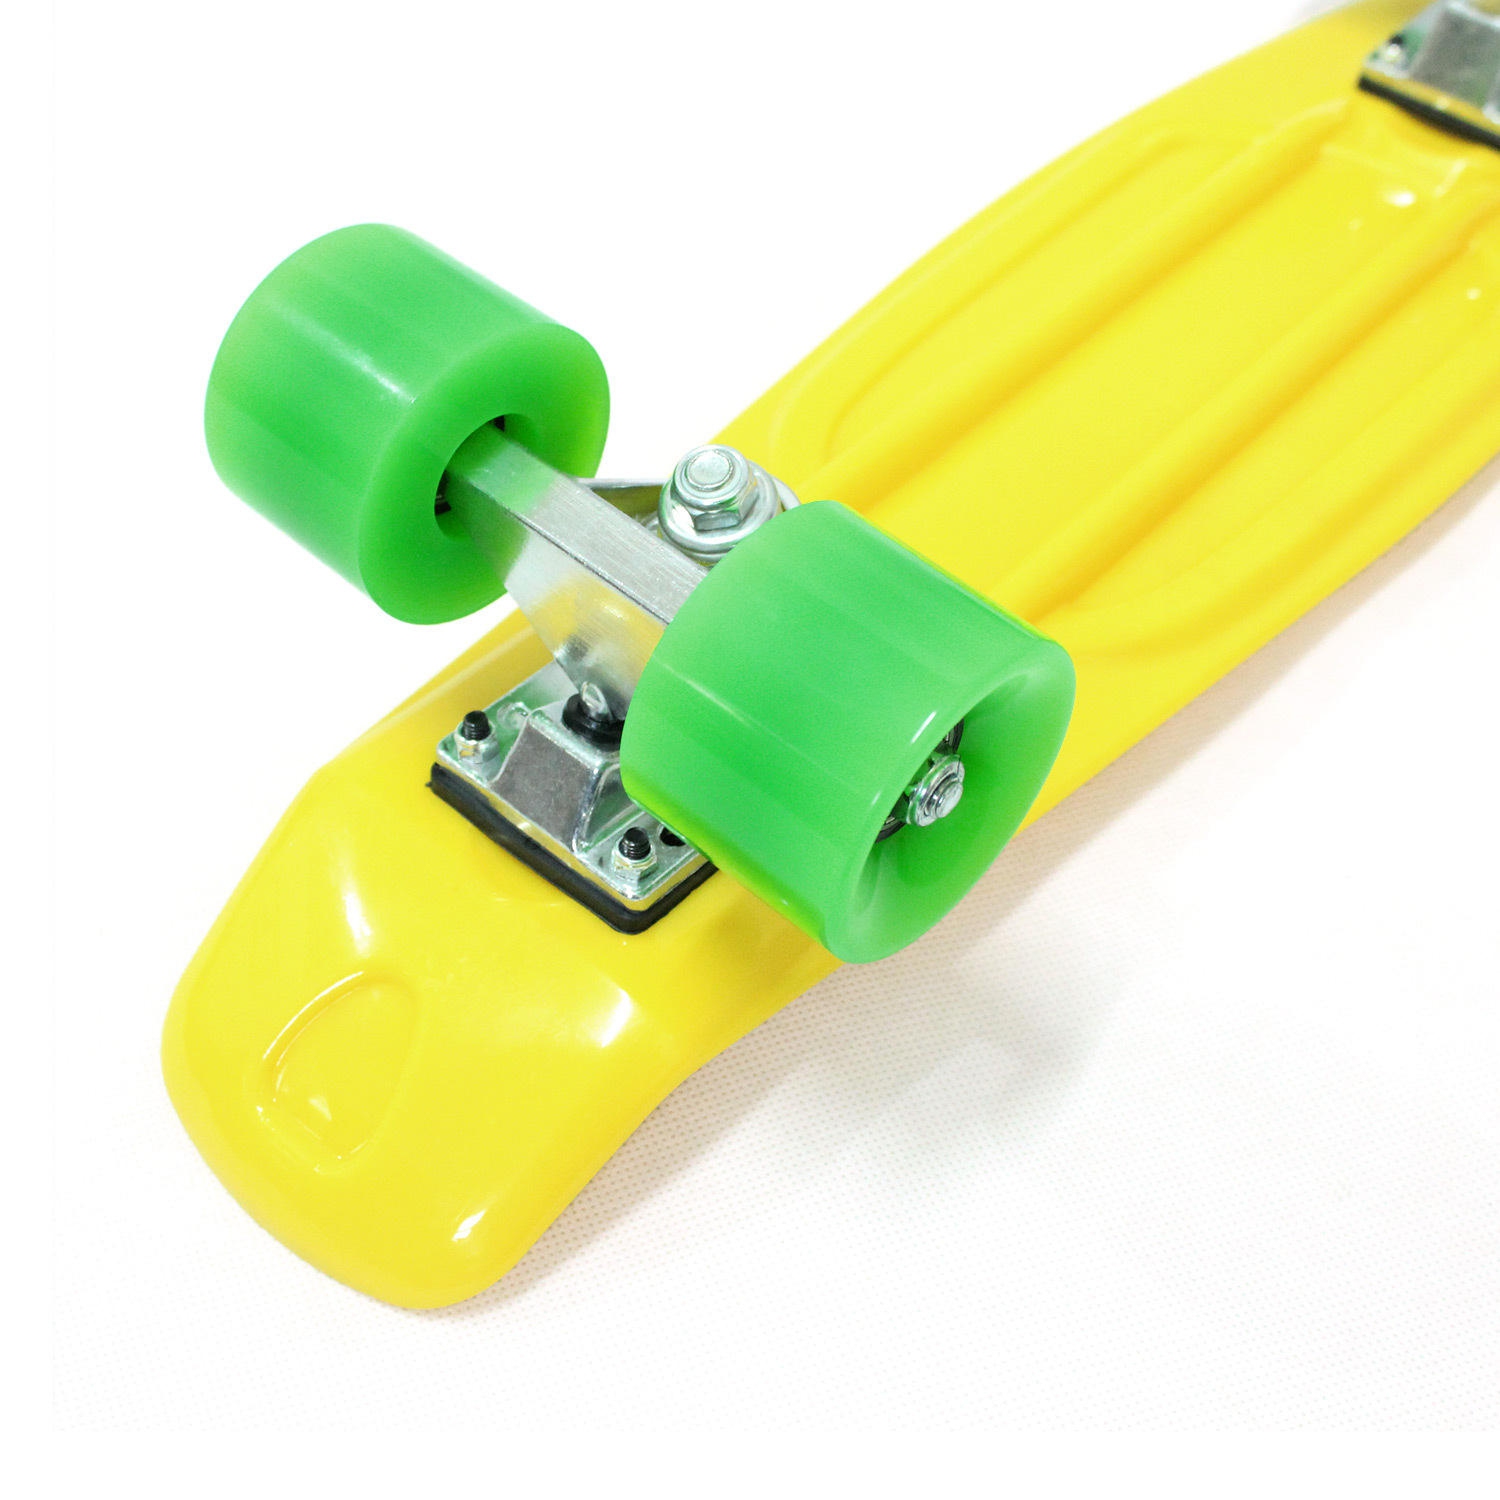 Planche à roulettes rétro en plastique de 22 po avec outil en T pour patin  tout-en-un, planche à roulettes de banane de surf de rue Cruiser